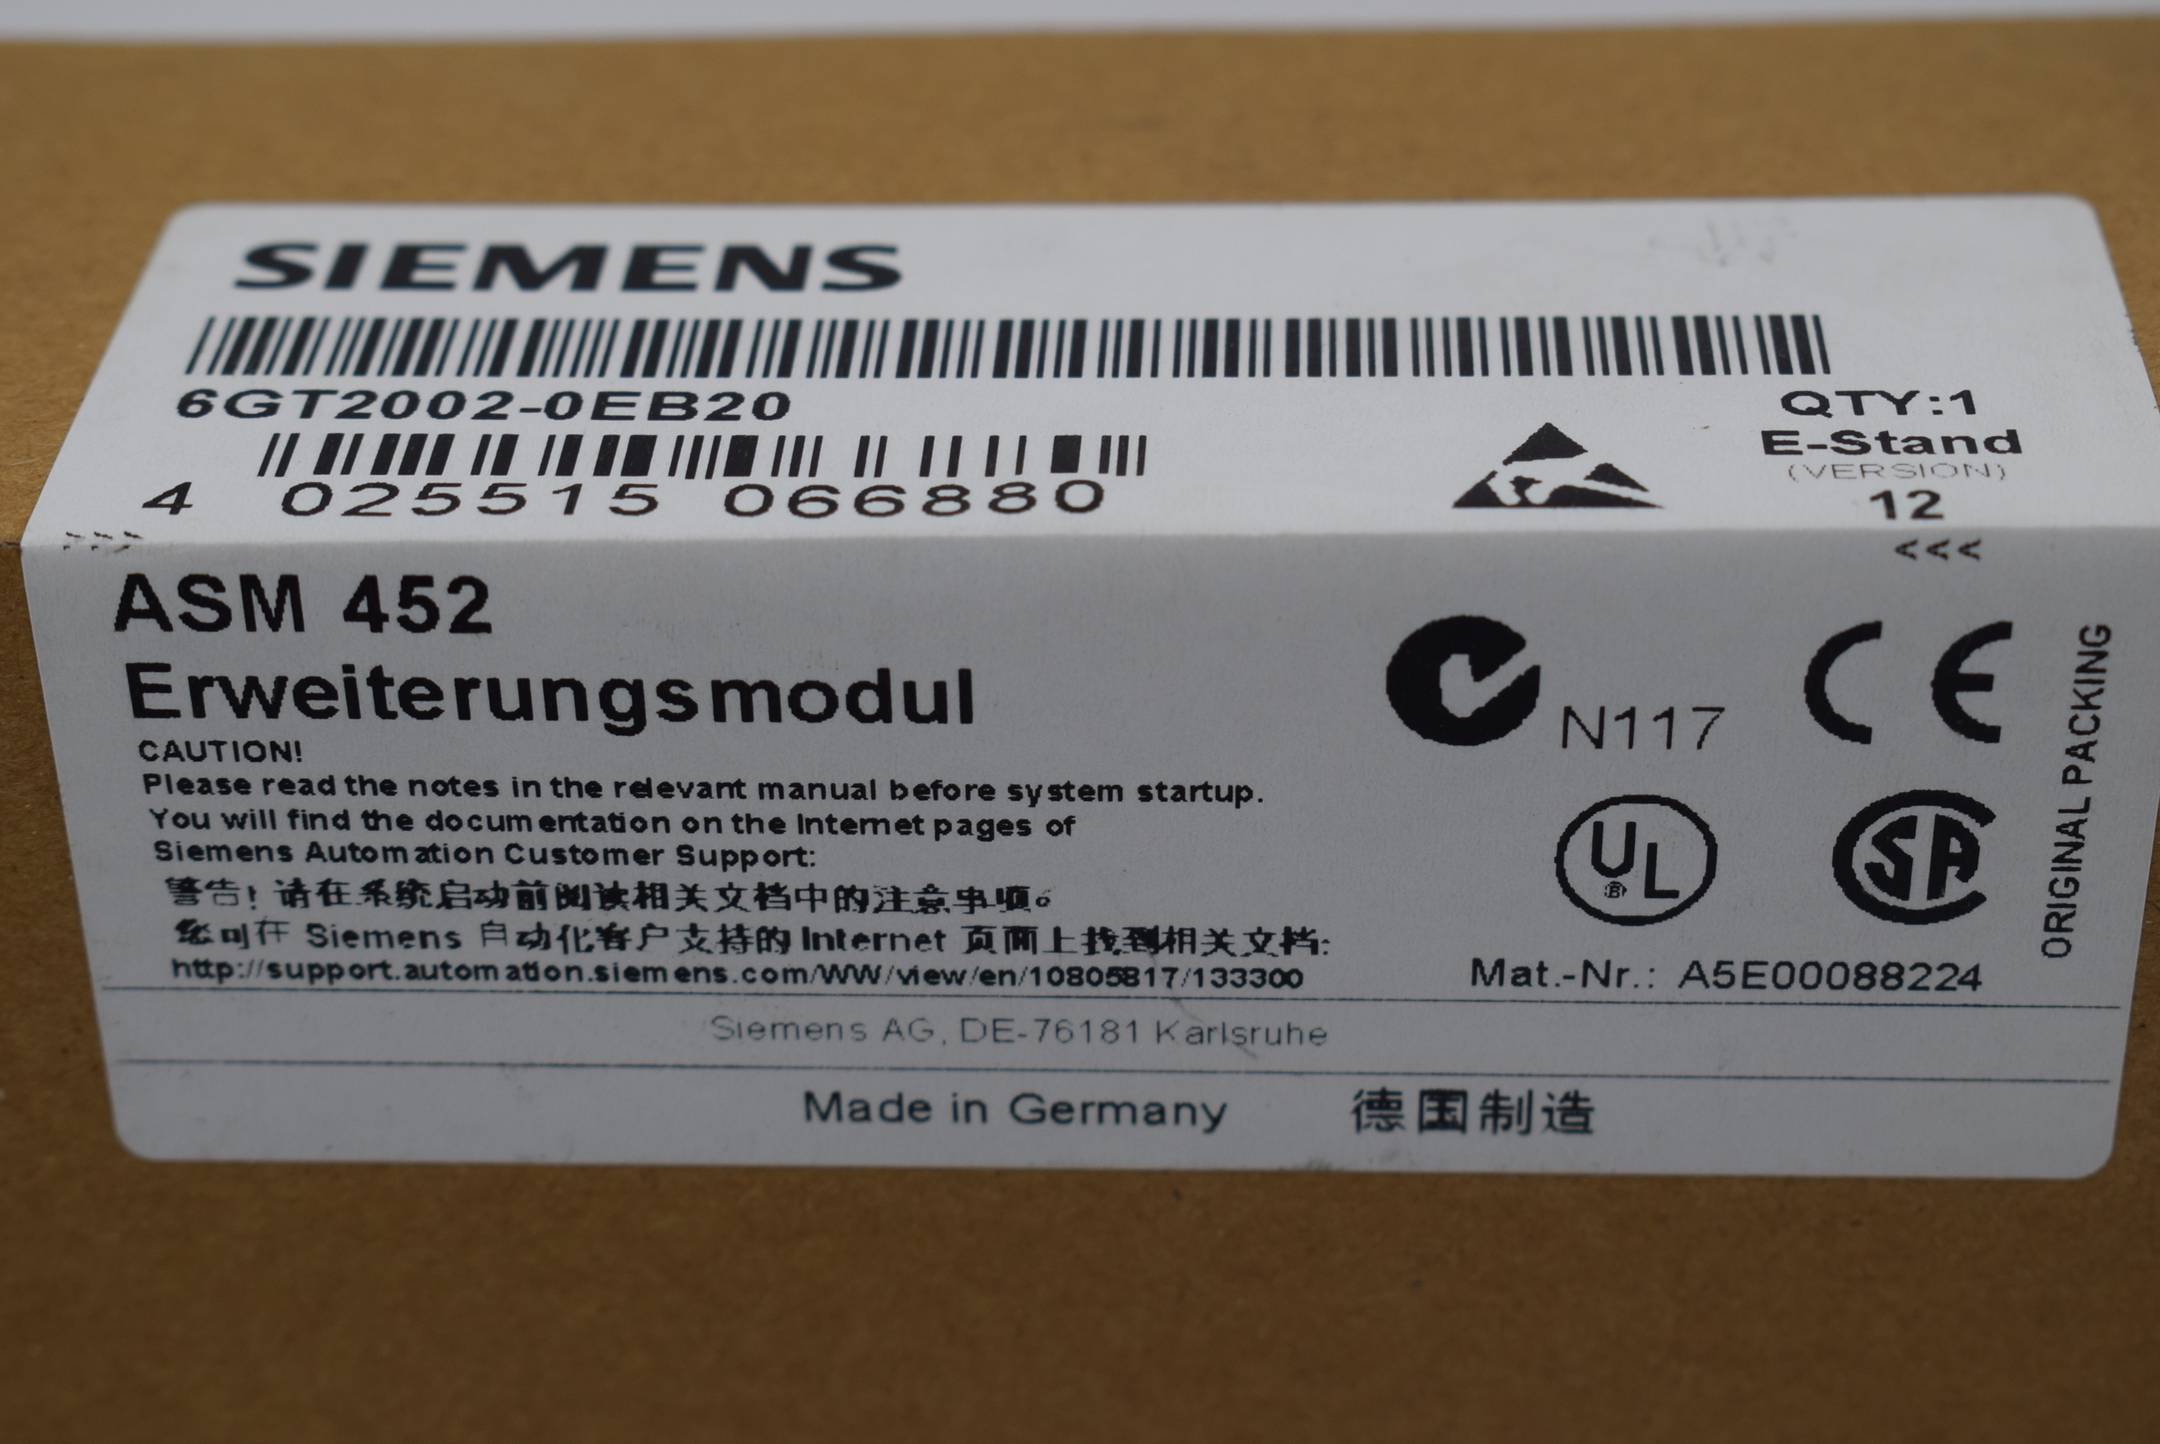 Siemens ASM 452 Erweiterungsmodul 6GT2002-0EB20 ( 6GT2 002-0EB20 ) E. 12